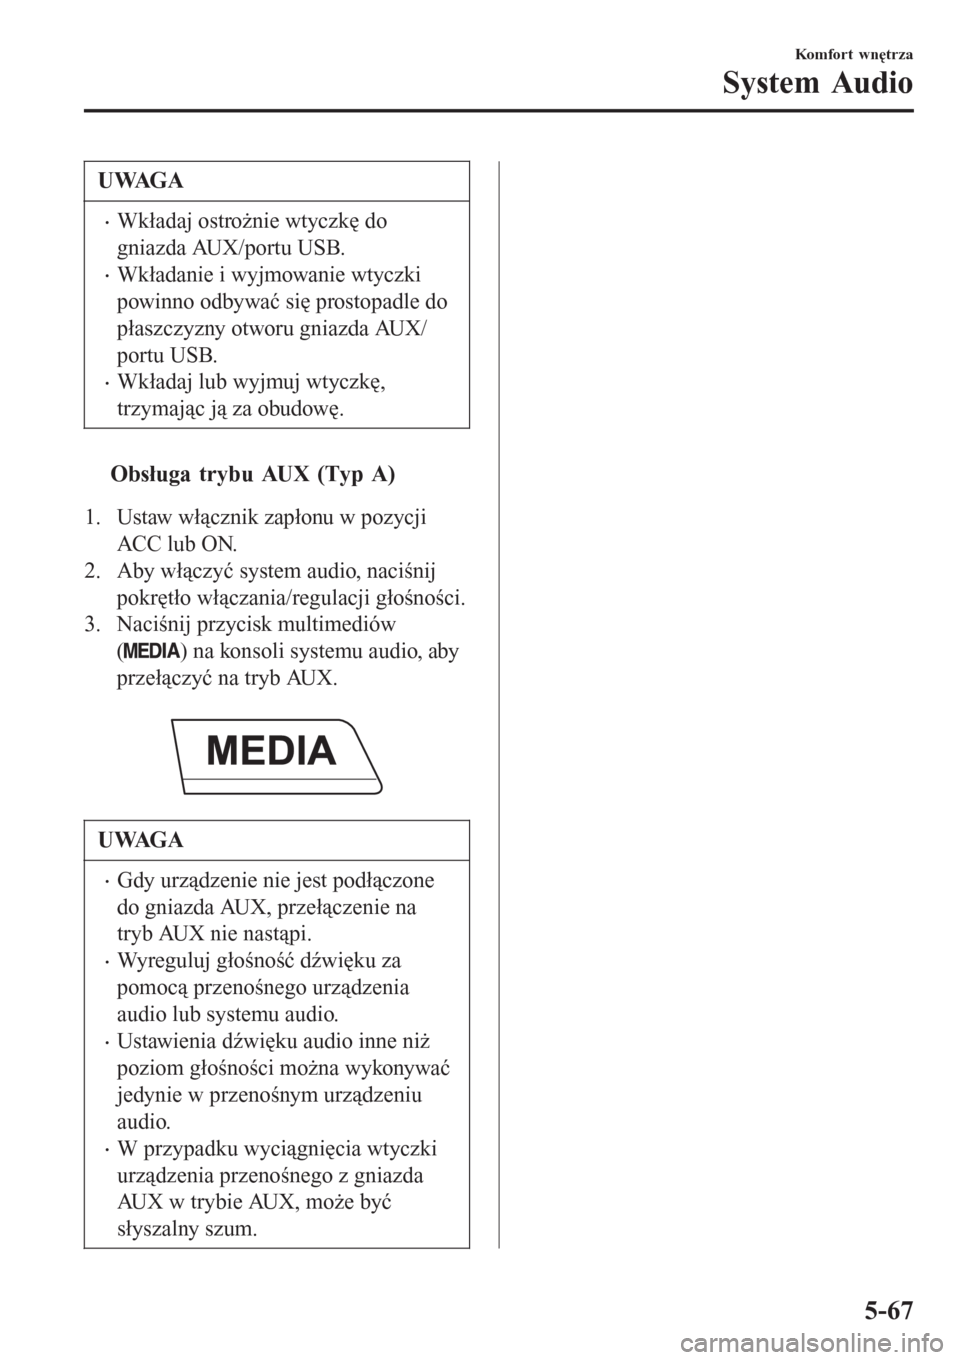 MAZDA MODEL MX-5 2015  Instrukcja Obsługi (in Polish) UWAGA
•Wkładaj ostrożnie wtyczkę do
gniazda AUX/portu USB.
•Wkładanie i wyjmowanie wtyczki
powinno odbywać się prostopadle do
płaszczyzny otworu gniazda AUX/
portu USB.
•Wkładaj lub wyjm